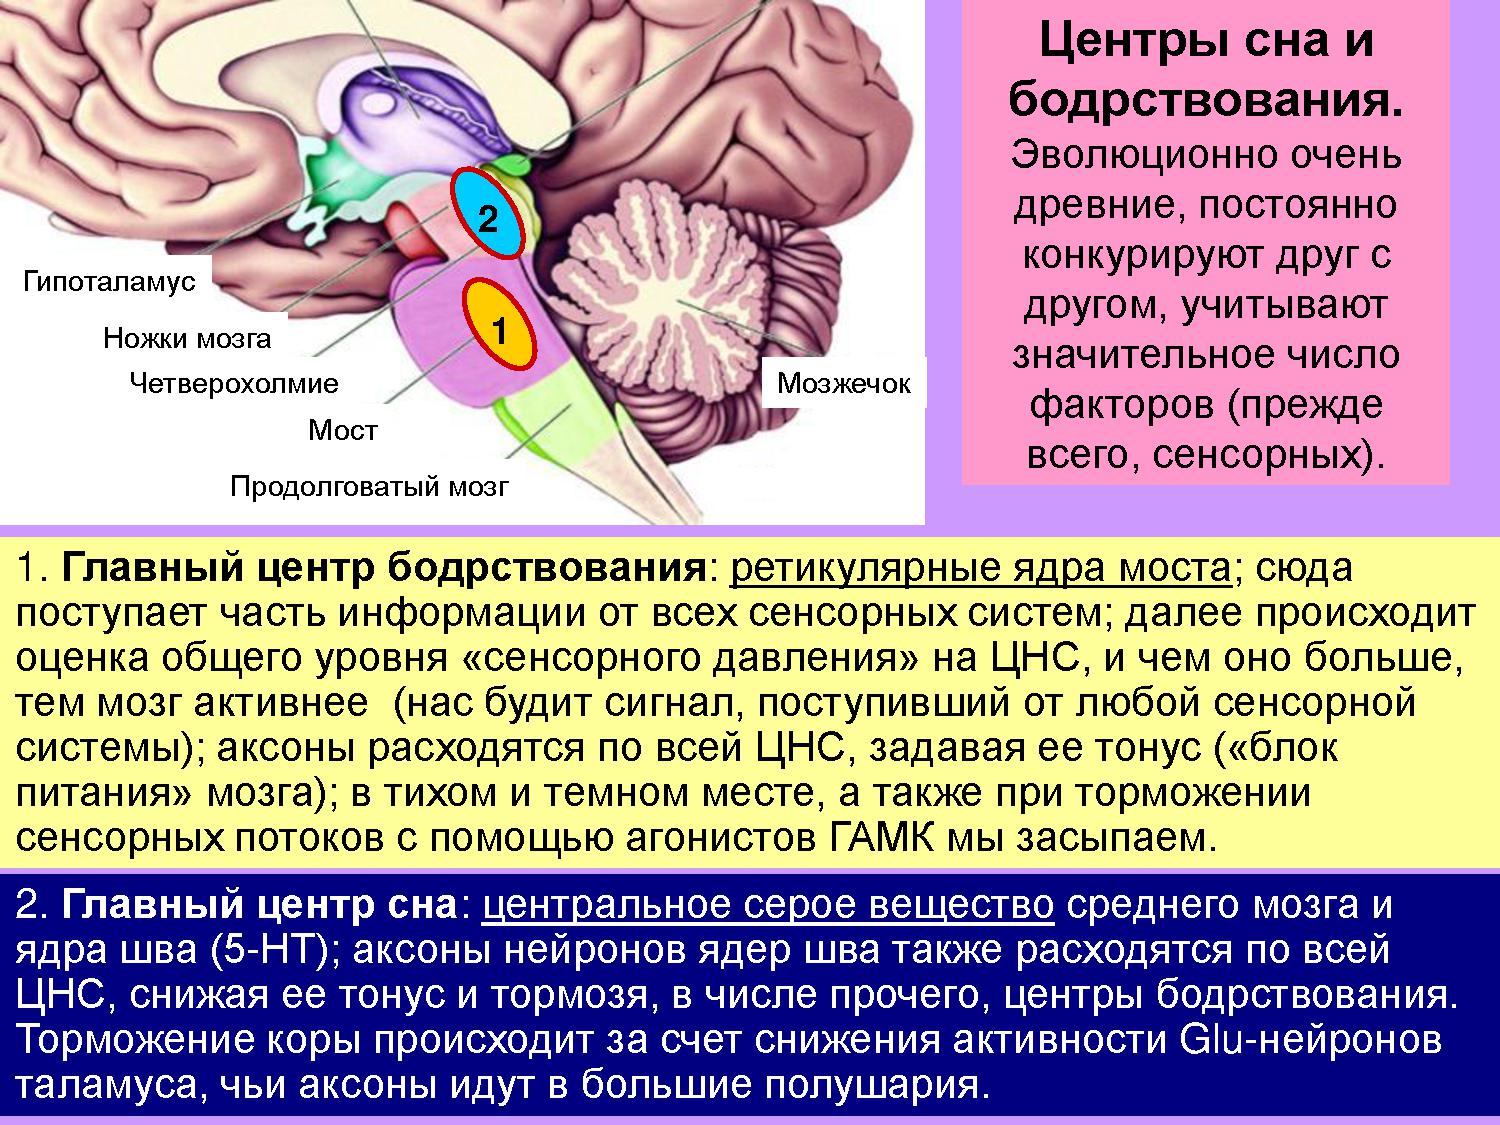 Функции моста и среднего мозга. Гипоталамус сон и бодрствование. Бодрствовани" гипоталамус ядра. Функции гипоталамуса головного мозга. Центры сна и бодрствования.